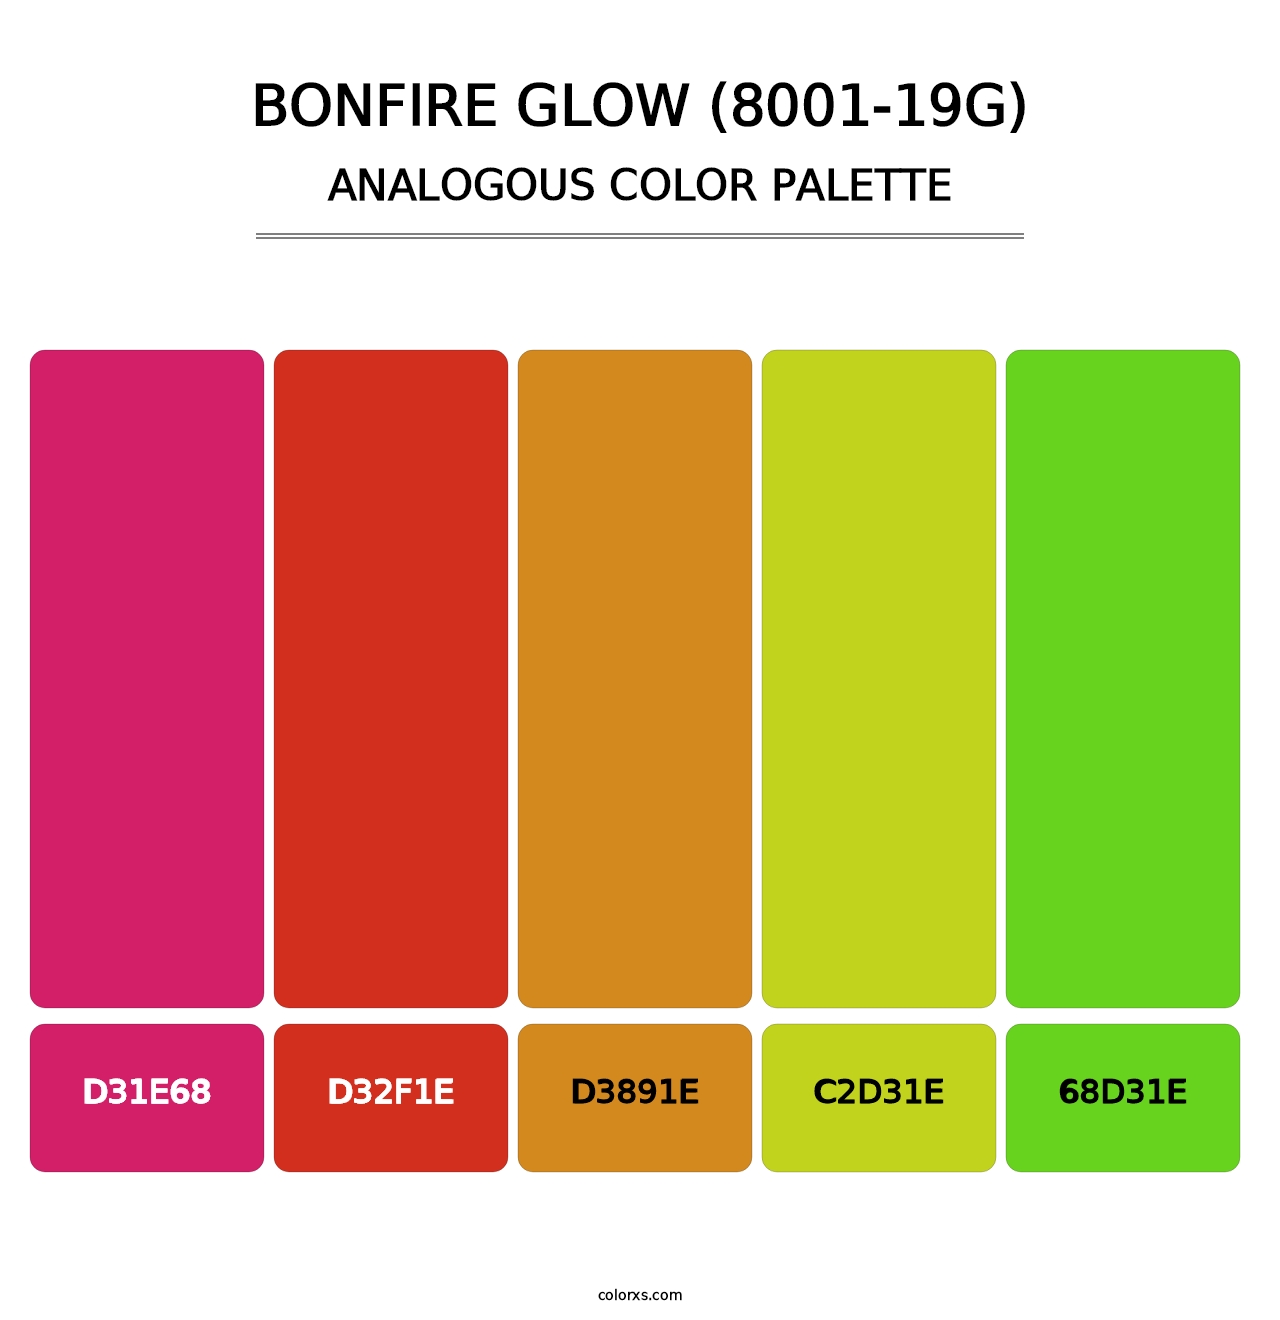 Bonfire Glow (8001-19G) - Analogous Color Palette